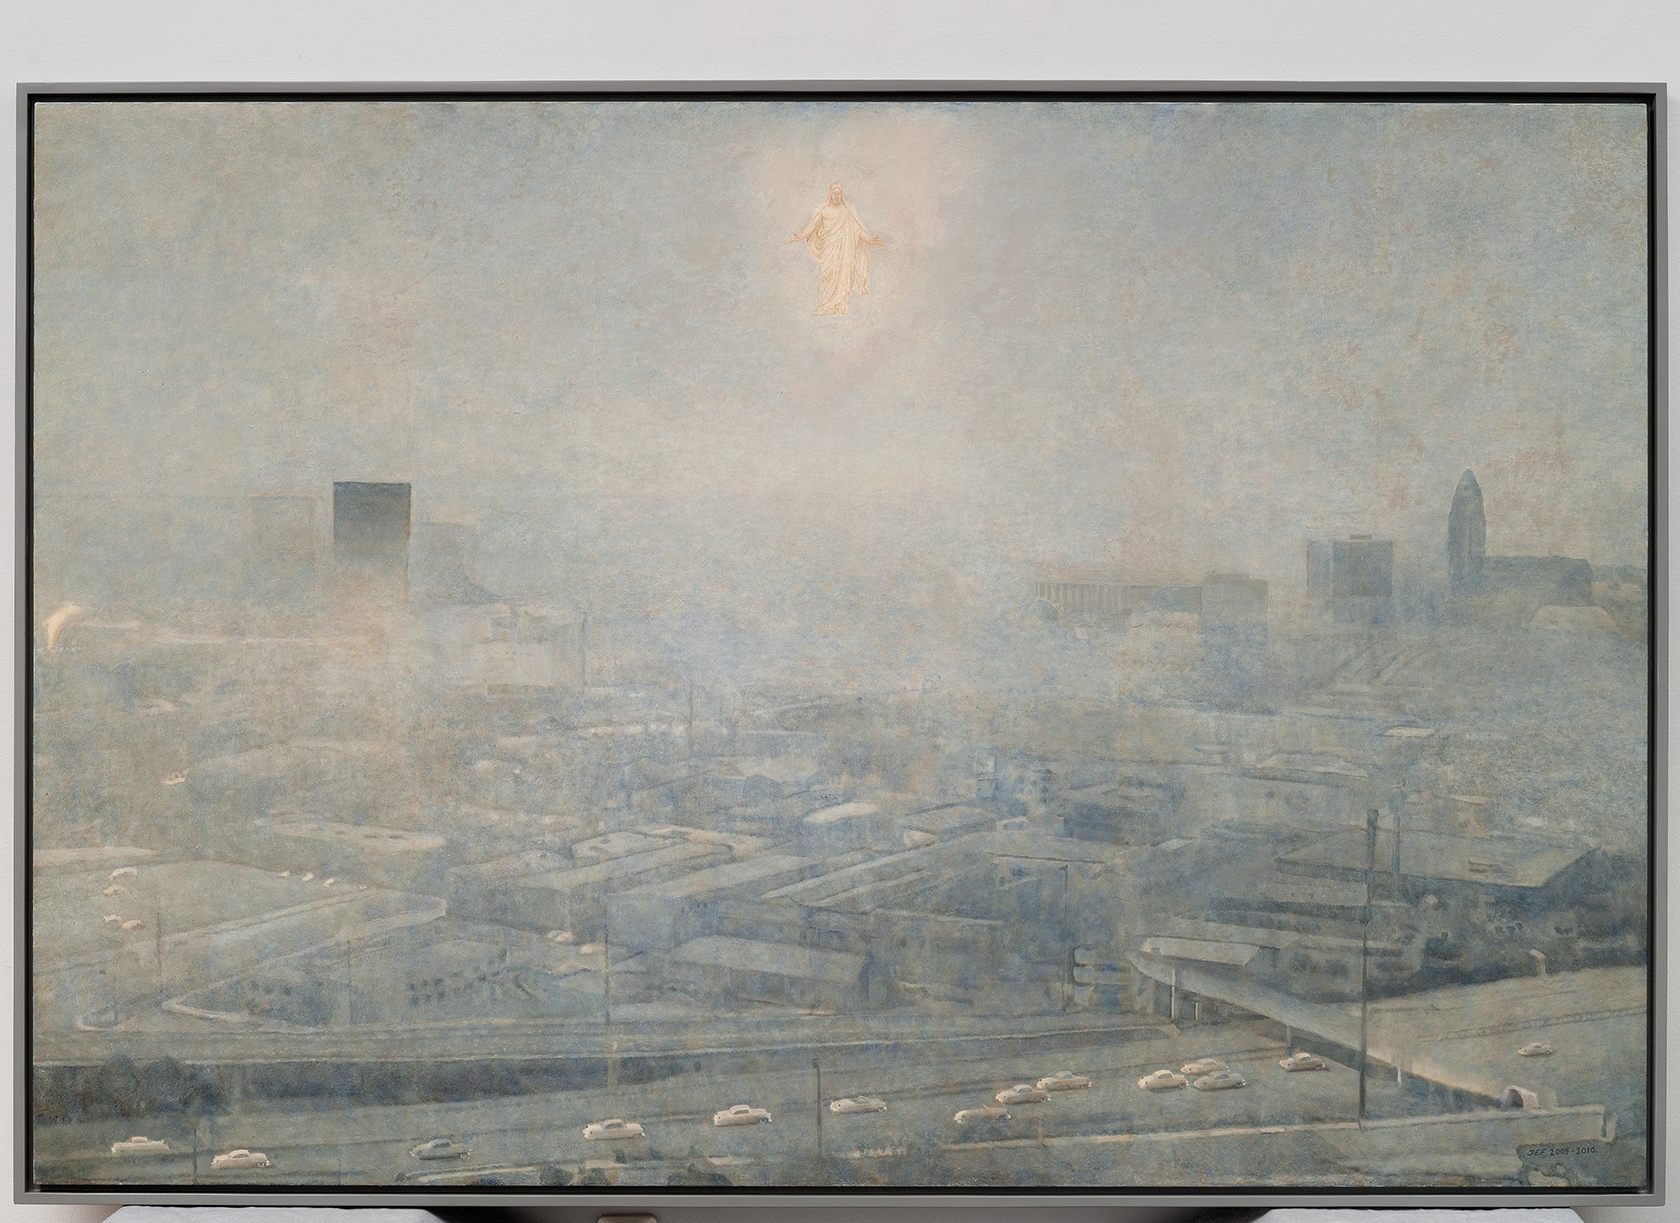 Oljemålning föreställande en stor stad med en kristusliknande gestalt svävande i himlen ovanför.